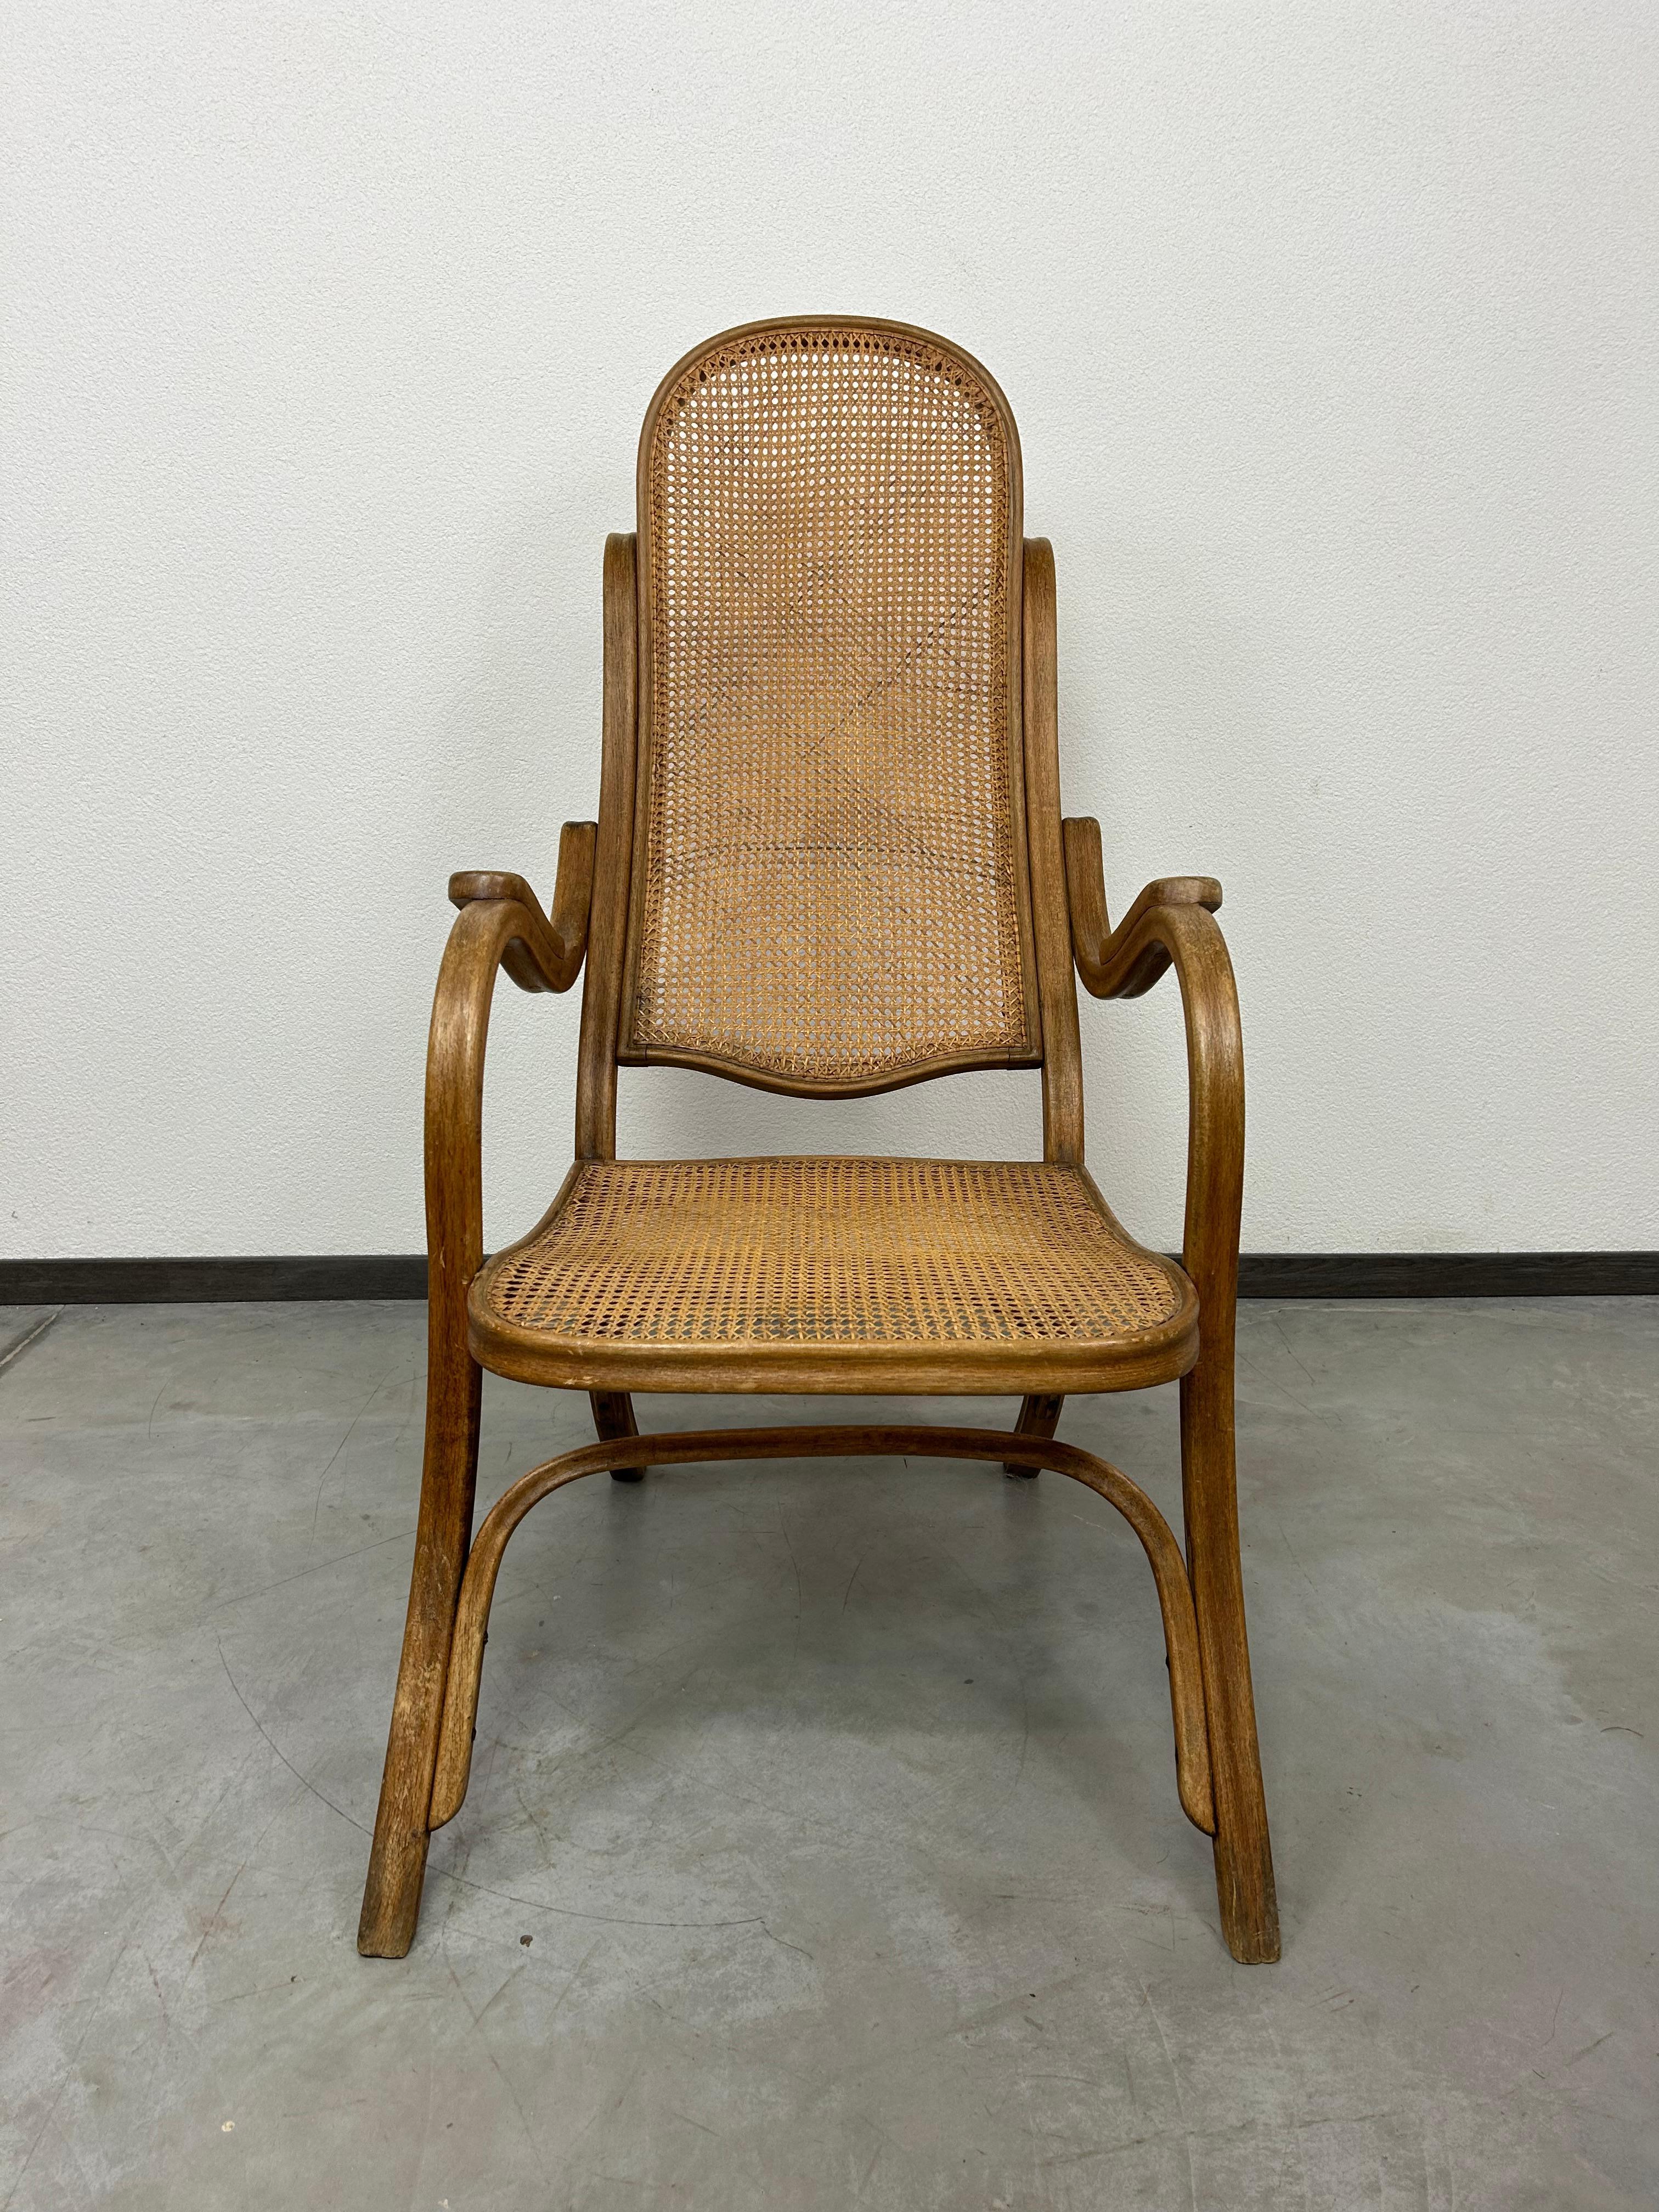 Seltener Sessel Nr.1 mit Rattansitz von Thonet in sehr schönem Originalzustand mit Gebrauchsspuren.